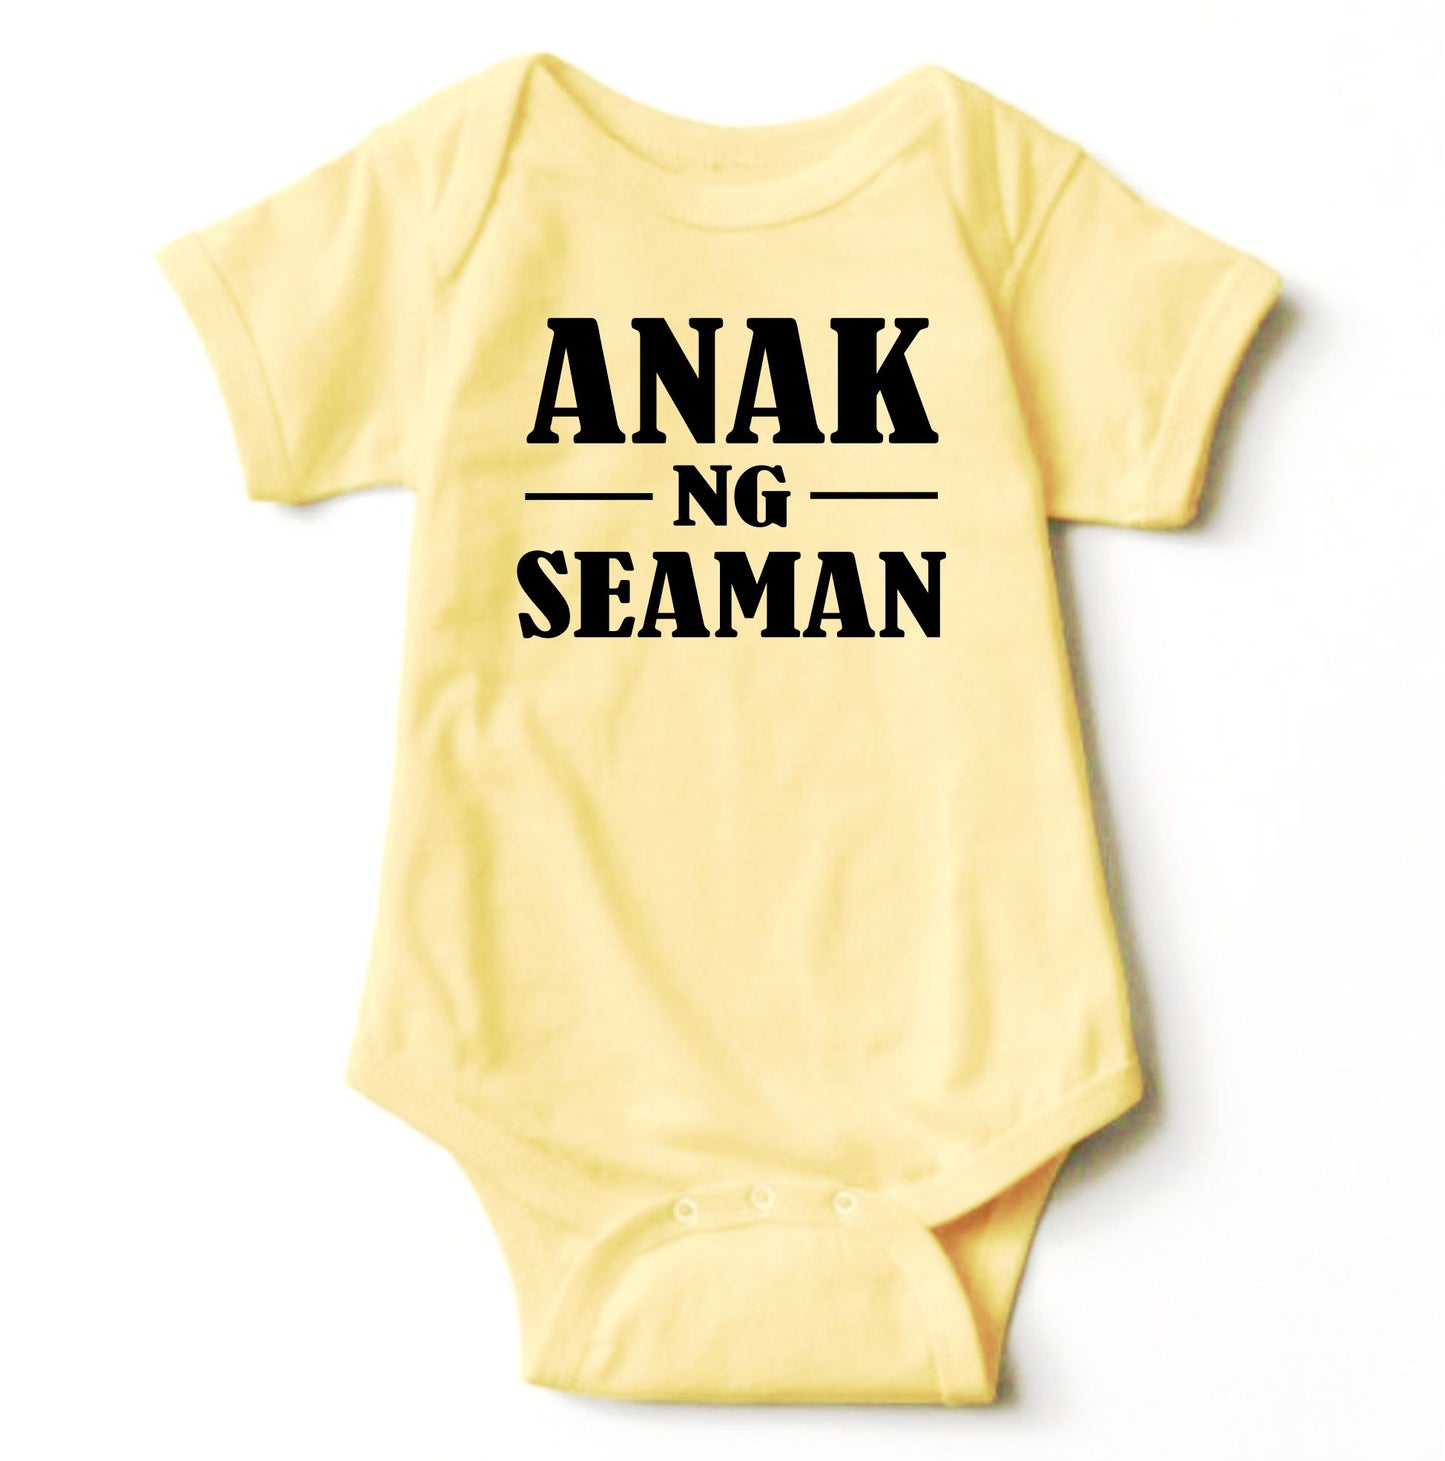 Baby Statement Onesies - Anak ng Seaman